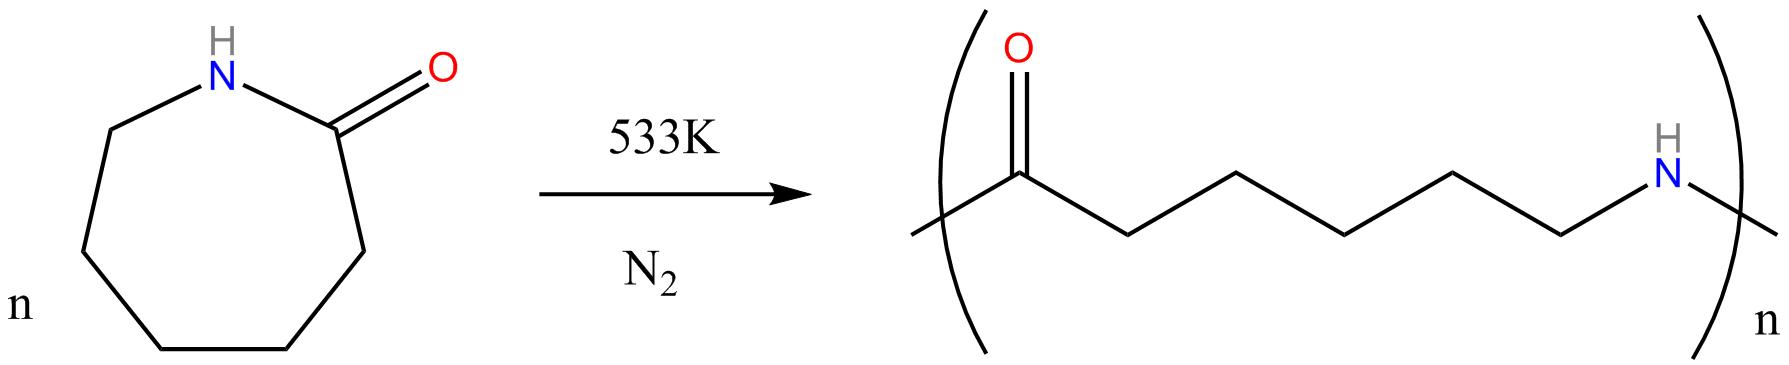 Nylon 6 from caprolactam